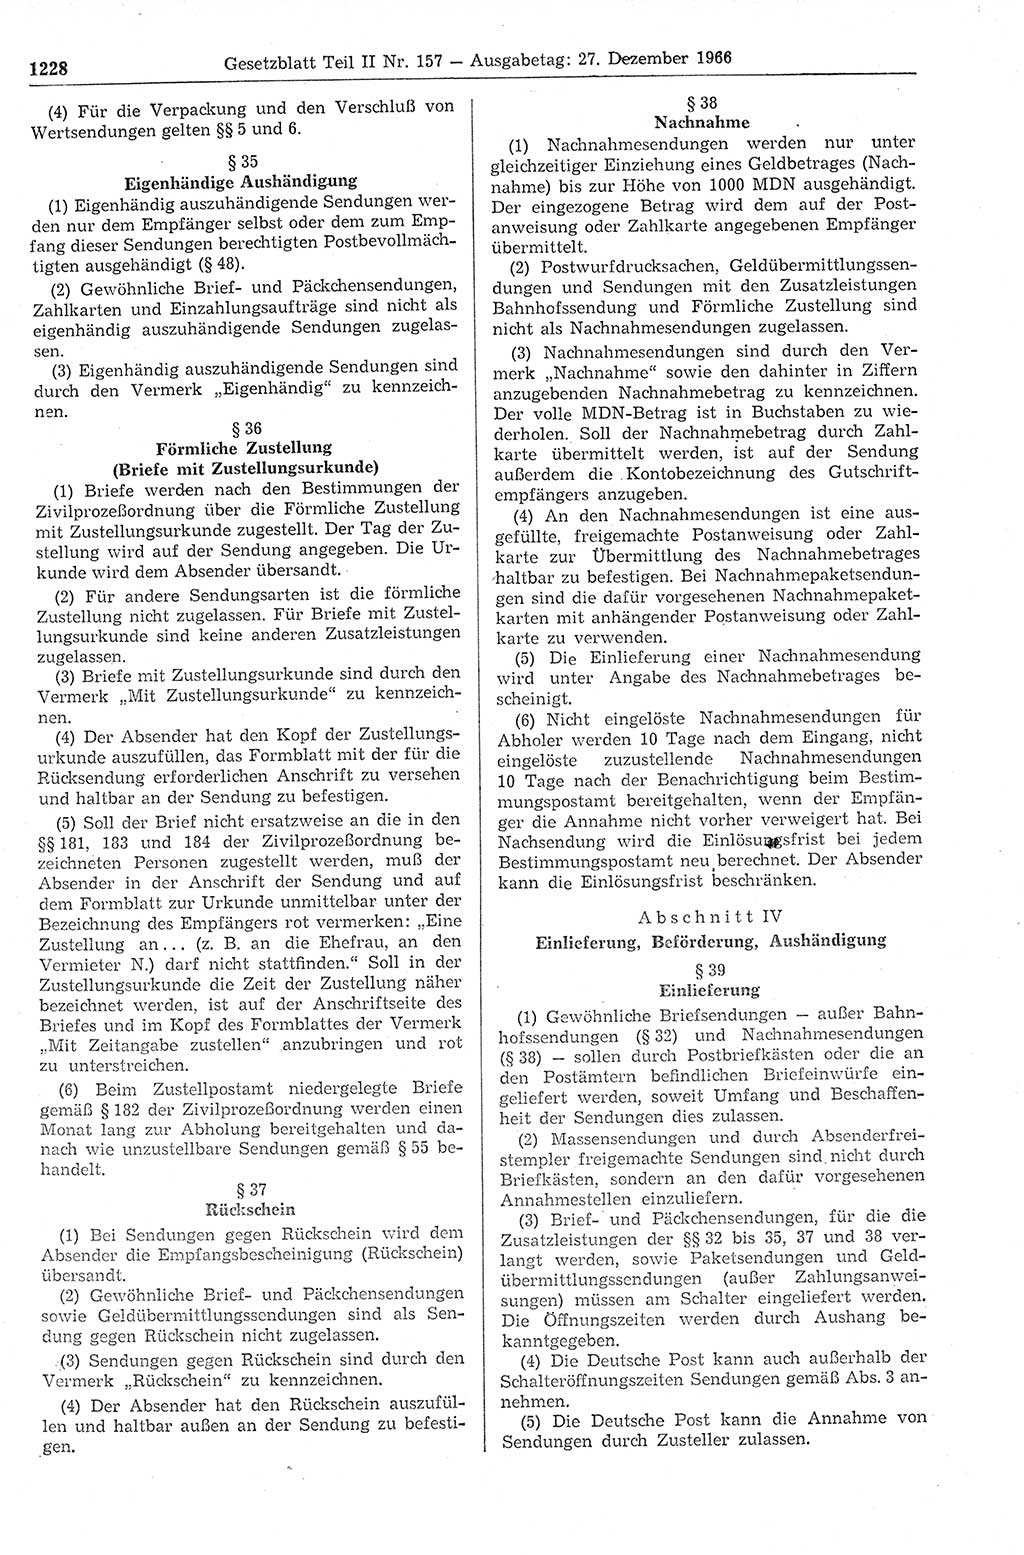 Gesetzblatt (GBl.) der Deutschen Demokratischen Republik (DDR) Teil ⅠⅠ 1966, Seite 1228 (GBl. DDR ⅠⅠ 1966, S. 1228)